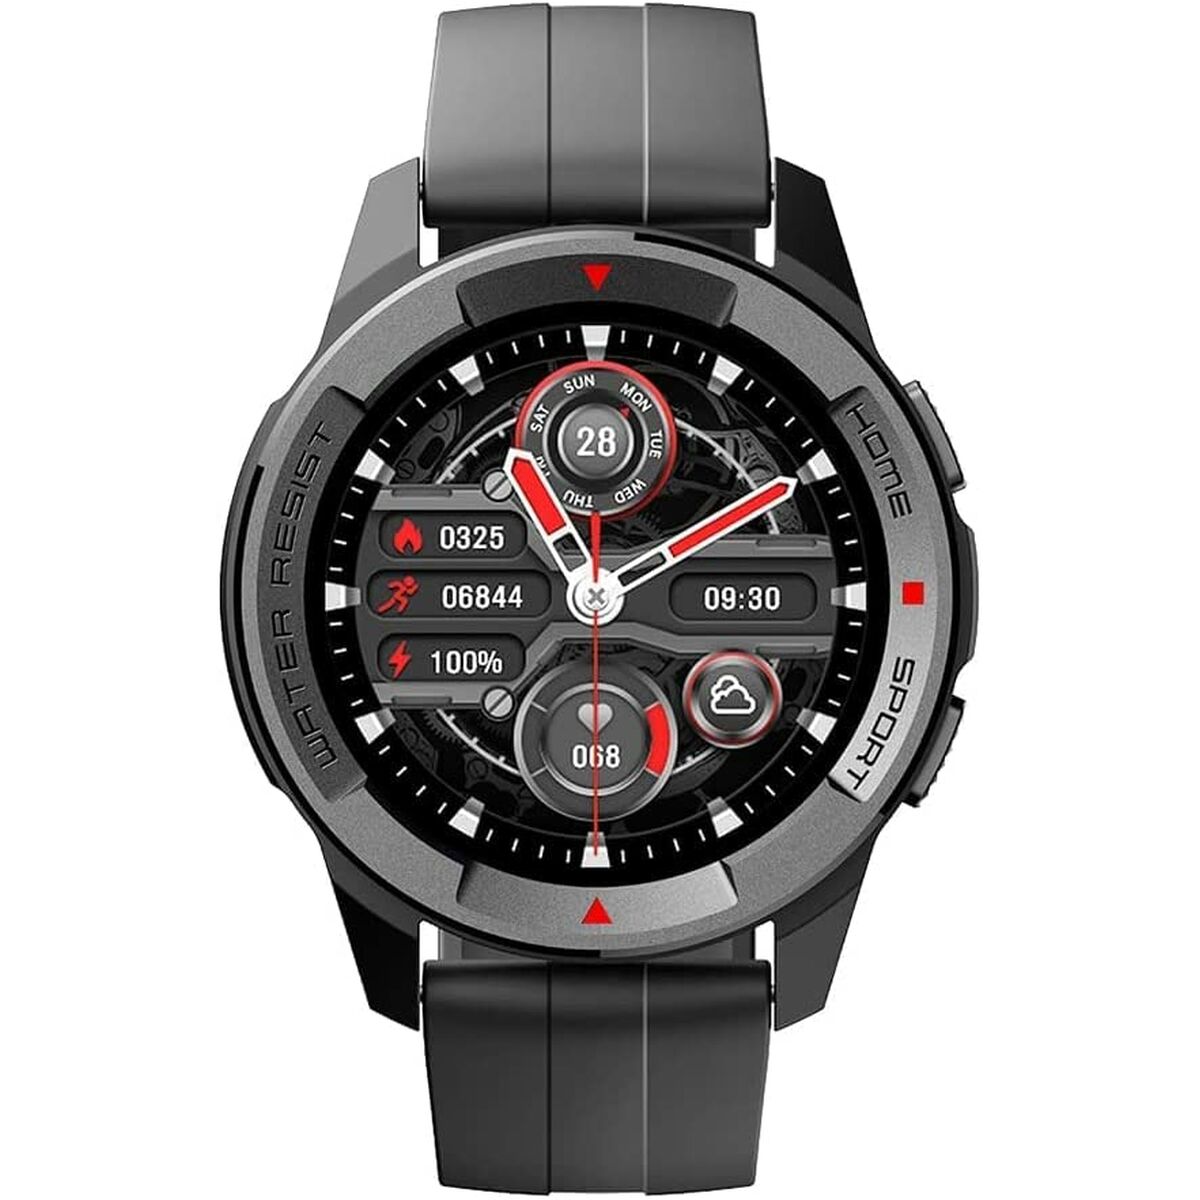 Kaufe Smartwatch Mibro MIBAC_X1 Grau bei AWK Flagship um € 76.00